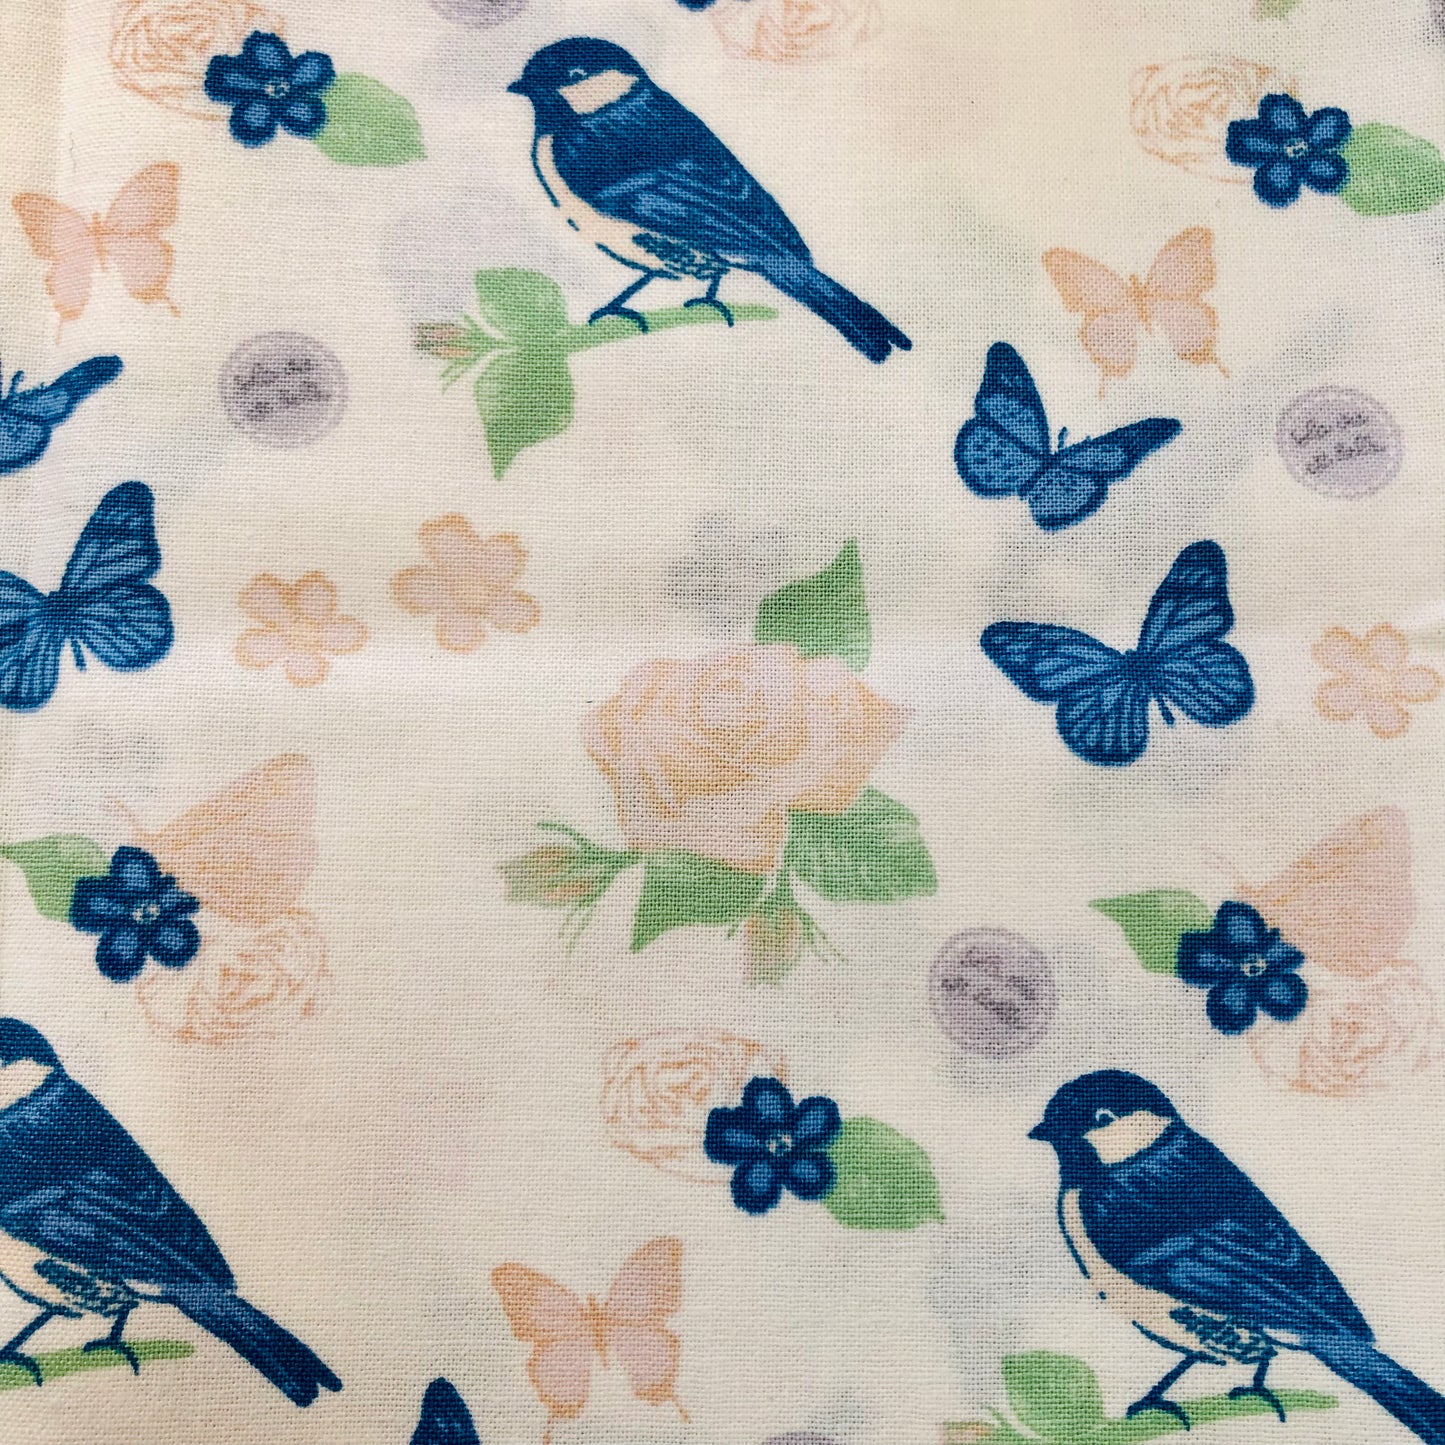 Blue Birds, Butterflies and Flowers Print Fat Quarter - Single